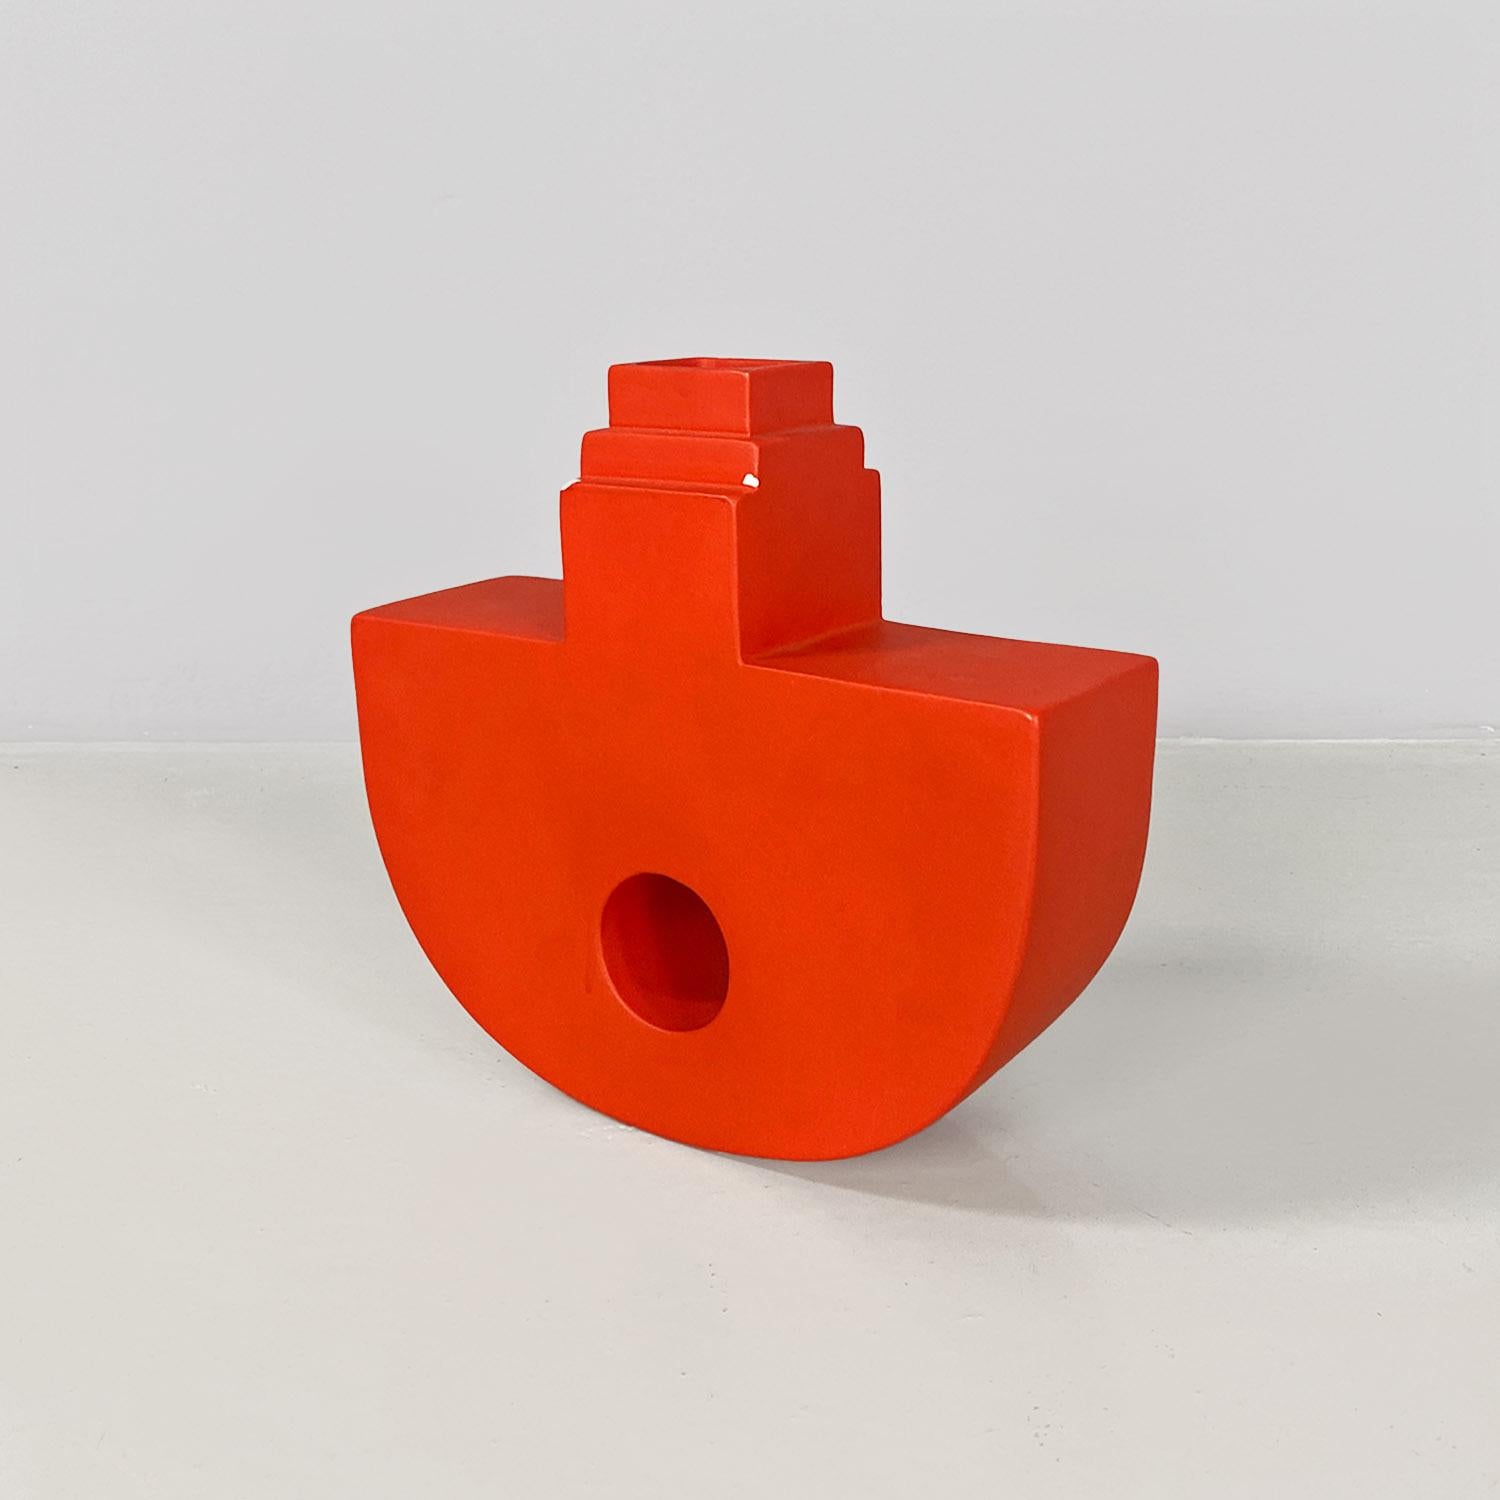 Skulptur mit dem Titel Dondolo, aus leuchtend orangefarbener, rot lackierter Keramik mit matter Oberfläche. Der Gegenstand der Skulptur ist geometrisch und an der Basis abgerundet. Die Skulptur kann auch als Vase verwendet werden, da sie im oberen